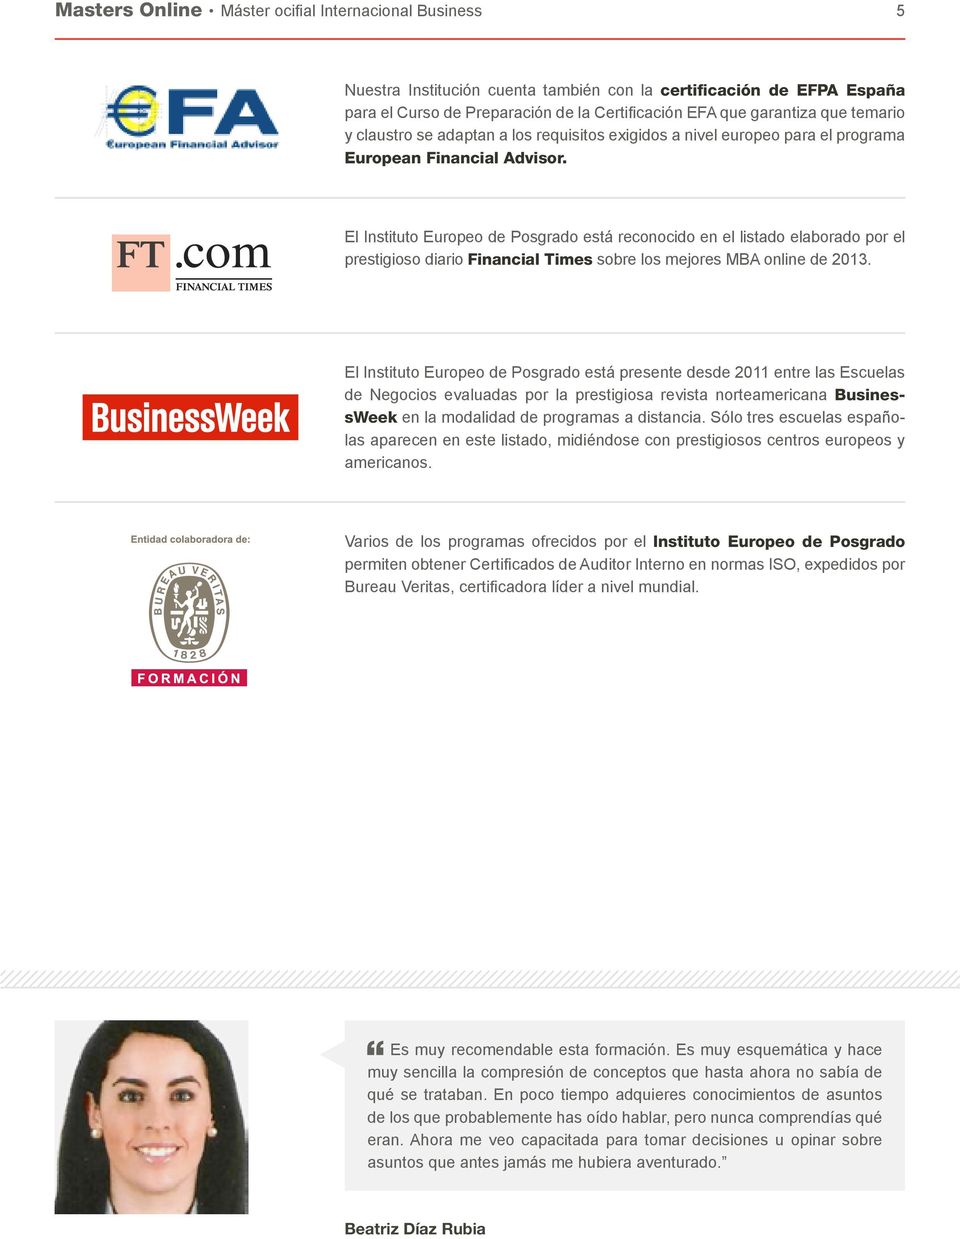 El Instituto Europeo de Posgrado está reconocido en el listado elaborado por el prestigioso diario Financial Times sobre los mejores MBA online de 2013.